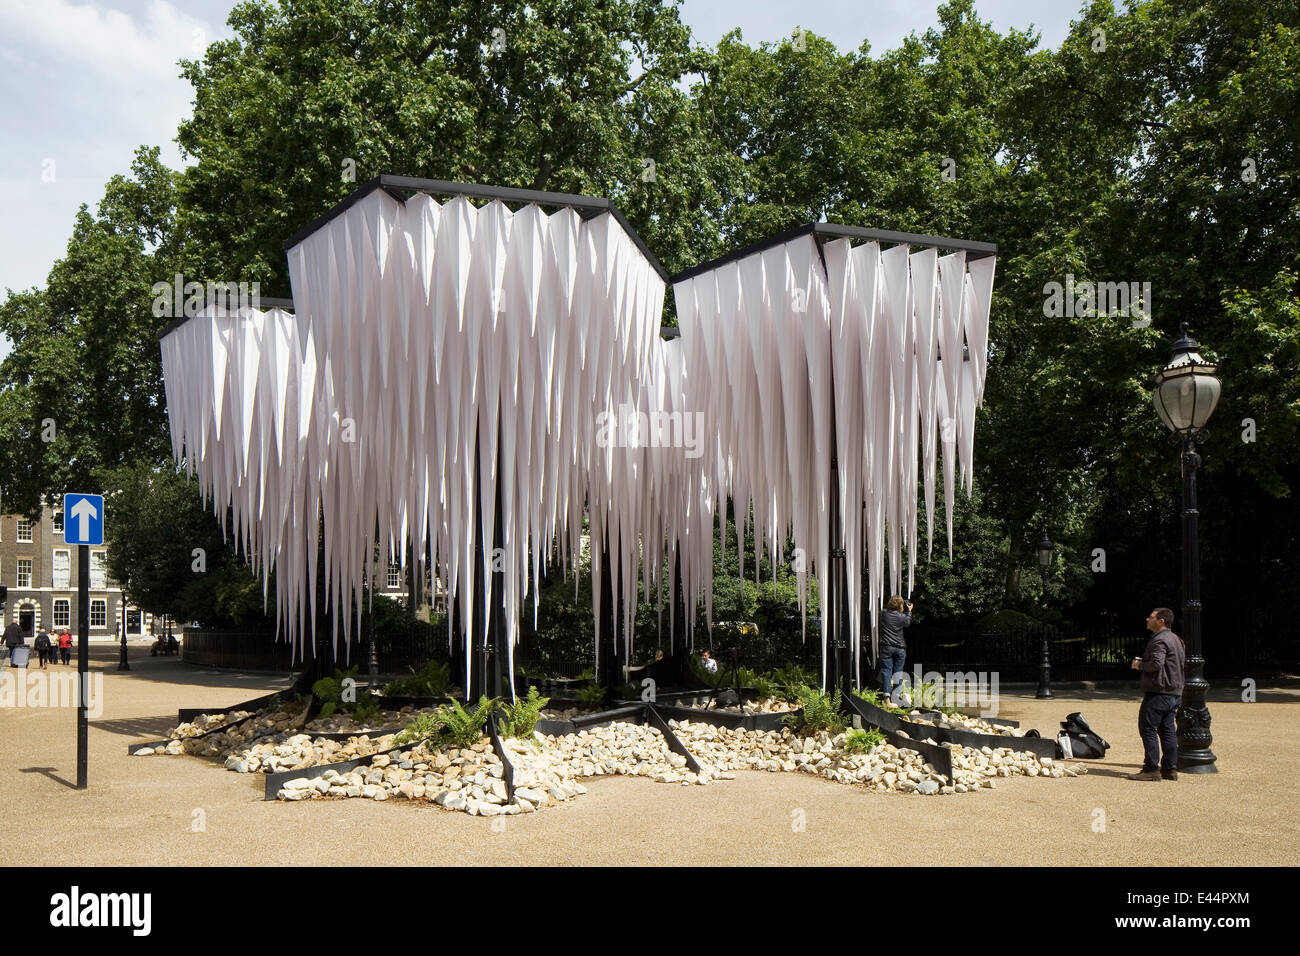 Regenwald-Pavillon, London, Vereinigtes Königreich. Architekt: GUN Architekten, 2014. Weiten Blick über den Regenwald-Installation auf Bedford Sq Stockfoto